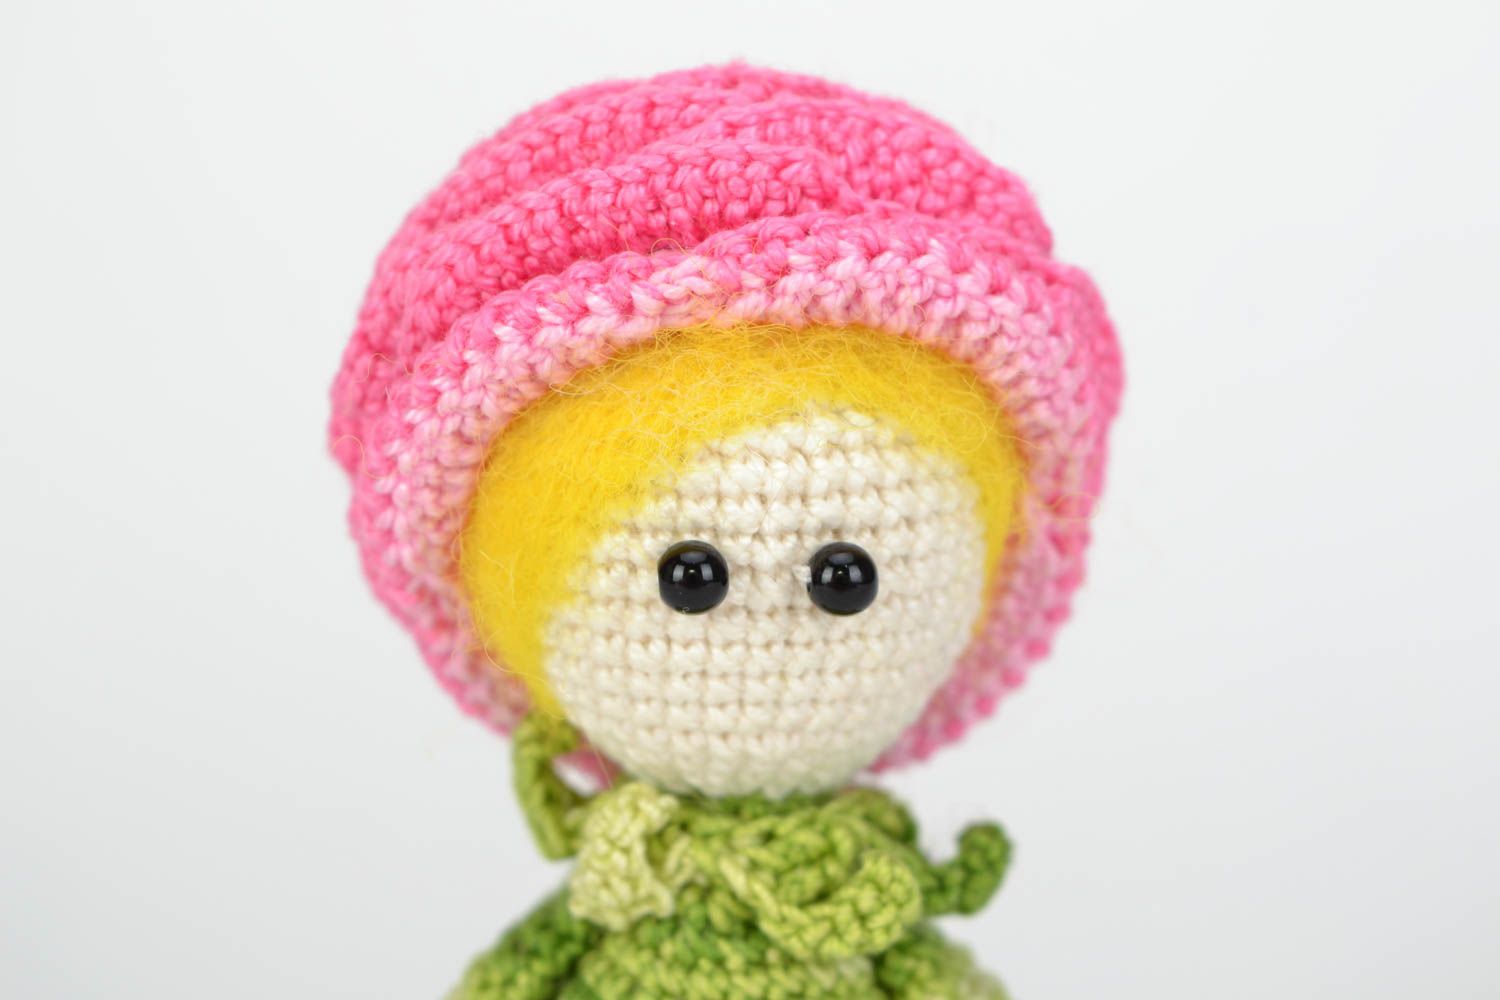 Мягкая игрушка ручной работы вязаная кукла девочка розовая с зеленым хенд мэйд фото 3